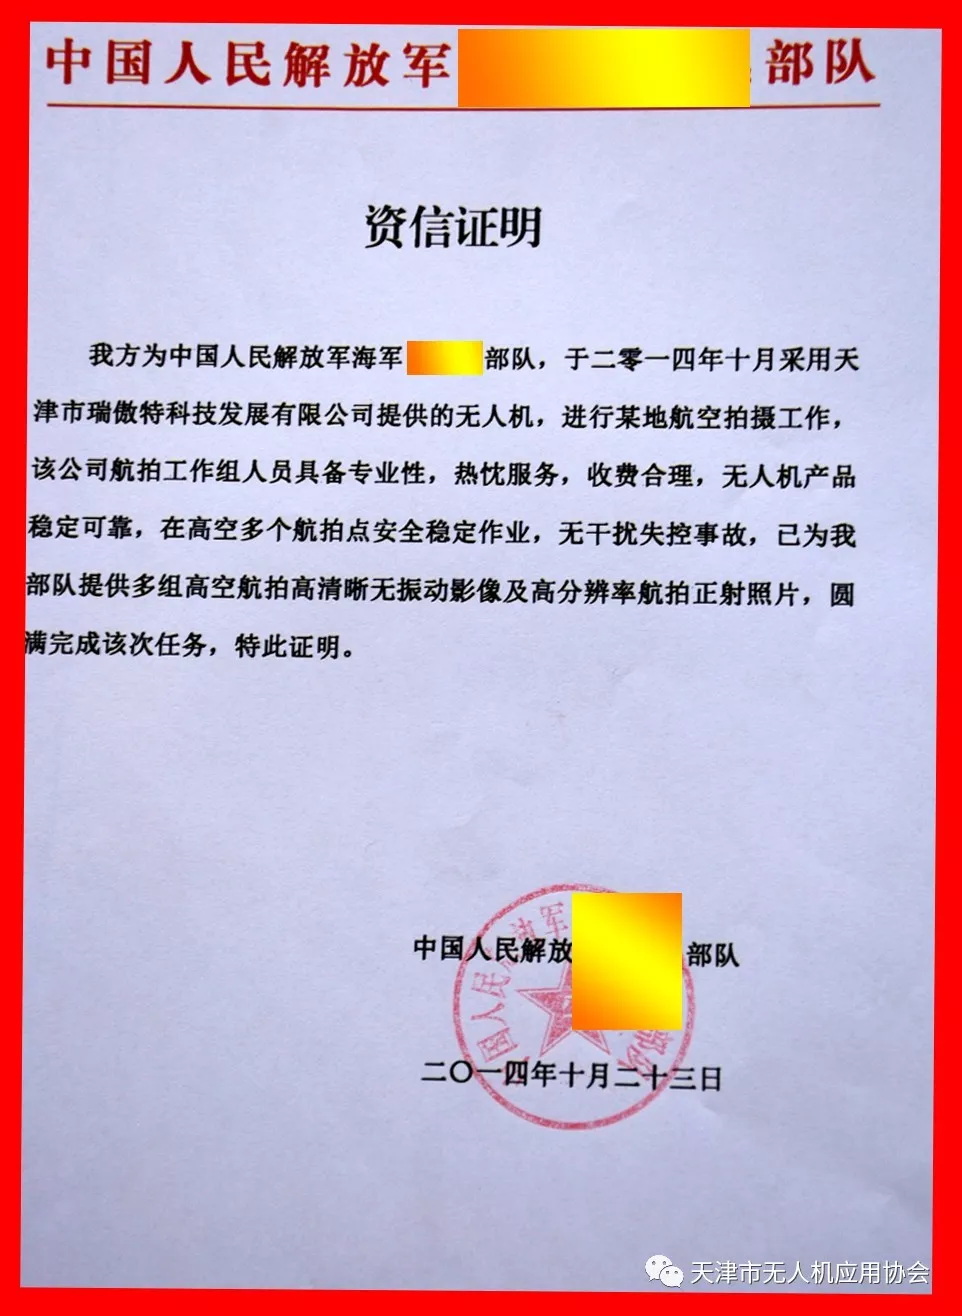 天无协骨干会员单位 天津市瑞傲特科技发展有限公司(图3)